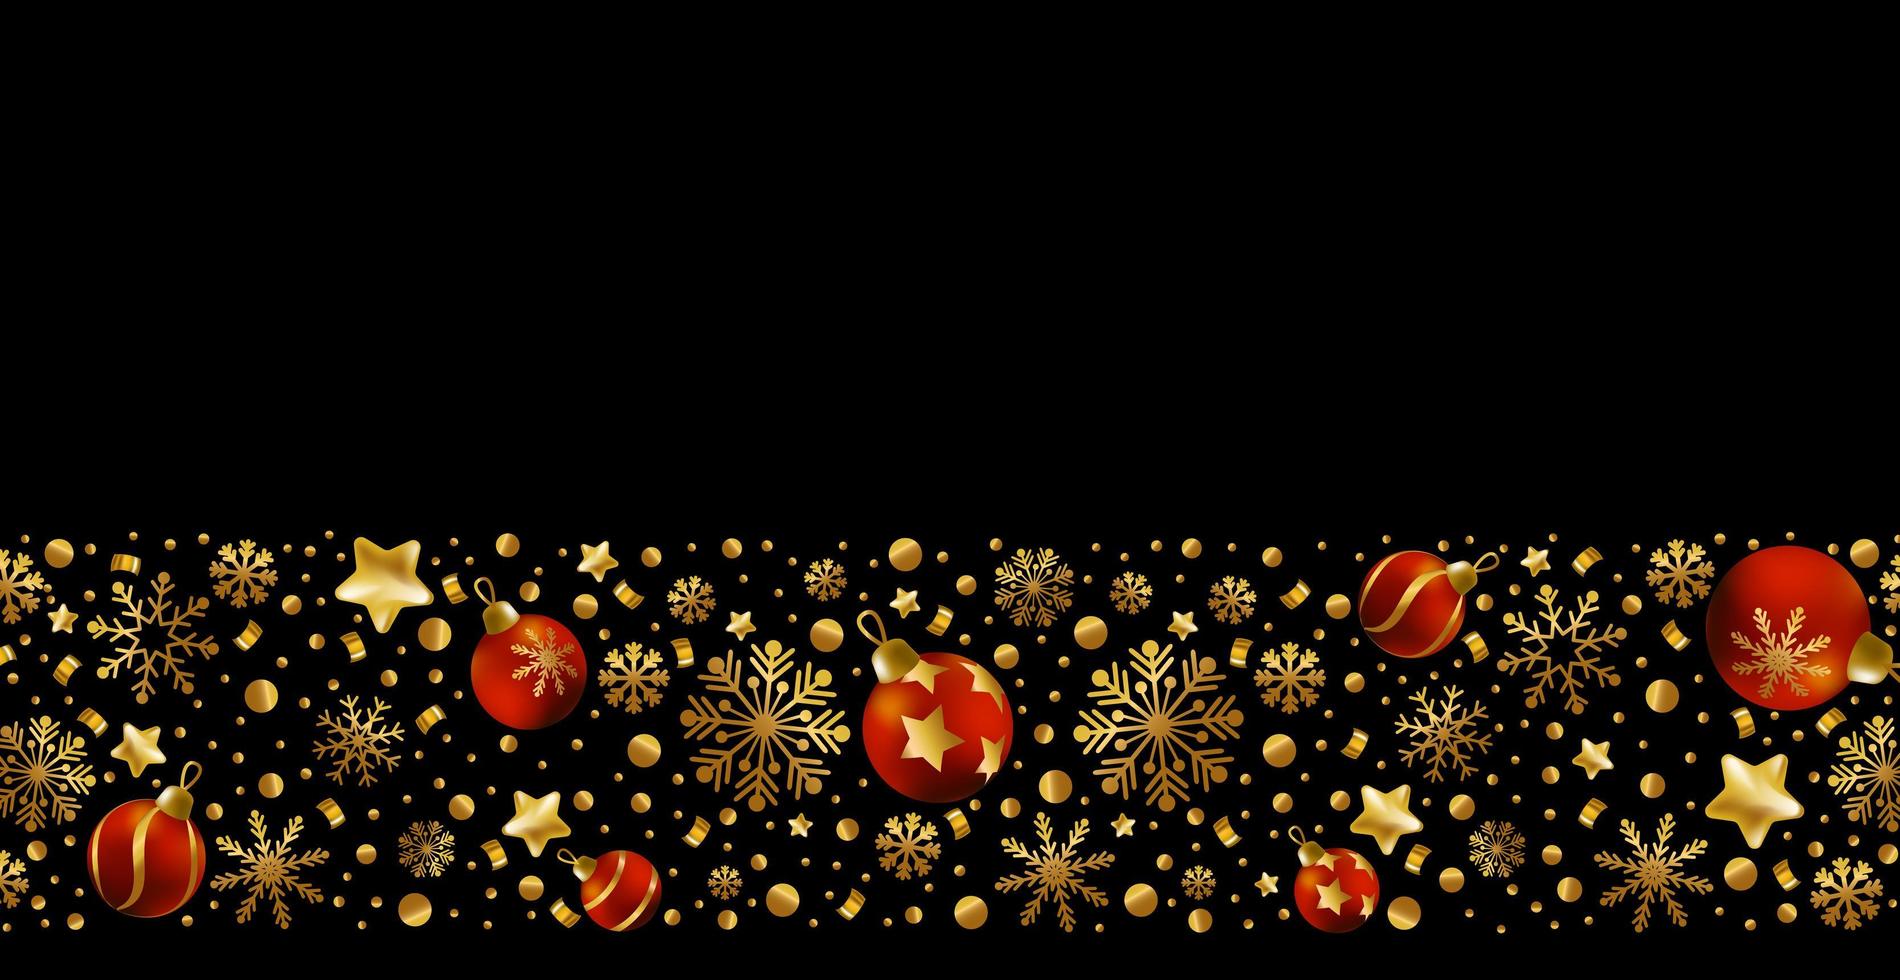 cartão de feliz ano novo e feliz Natal, banner de férias, poster da web. fundo escuro com flocos de neve dourados brilhantes e bolas de natal vermelhas - vetor